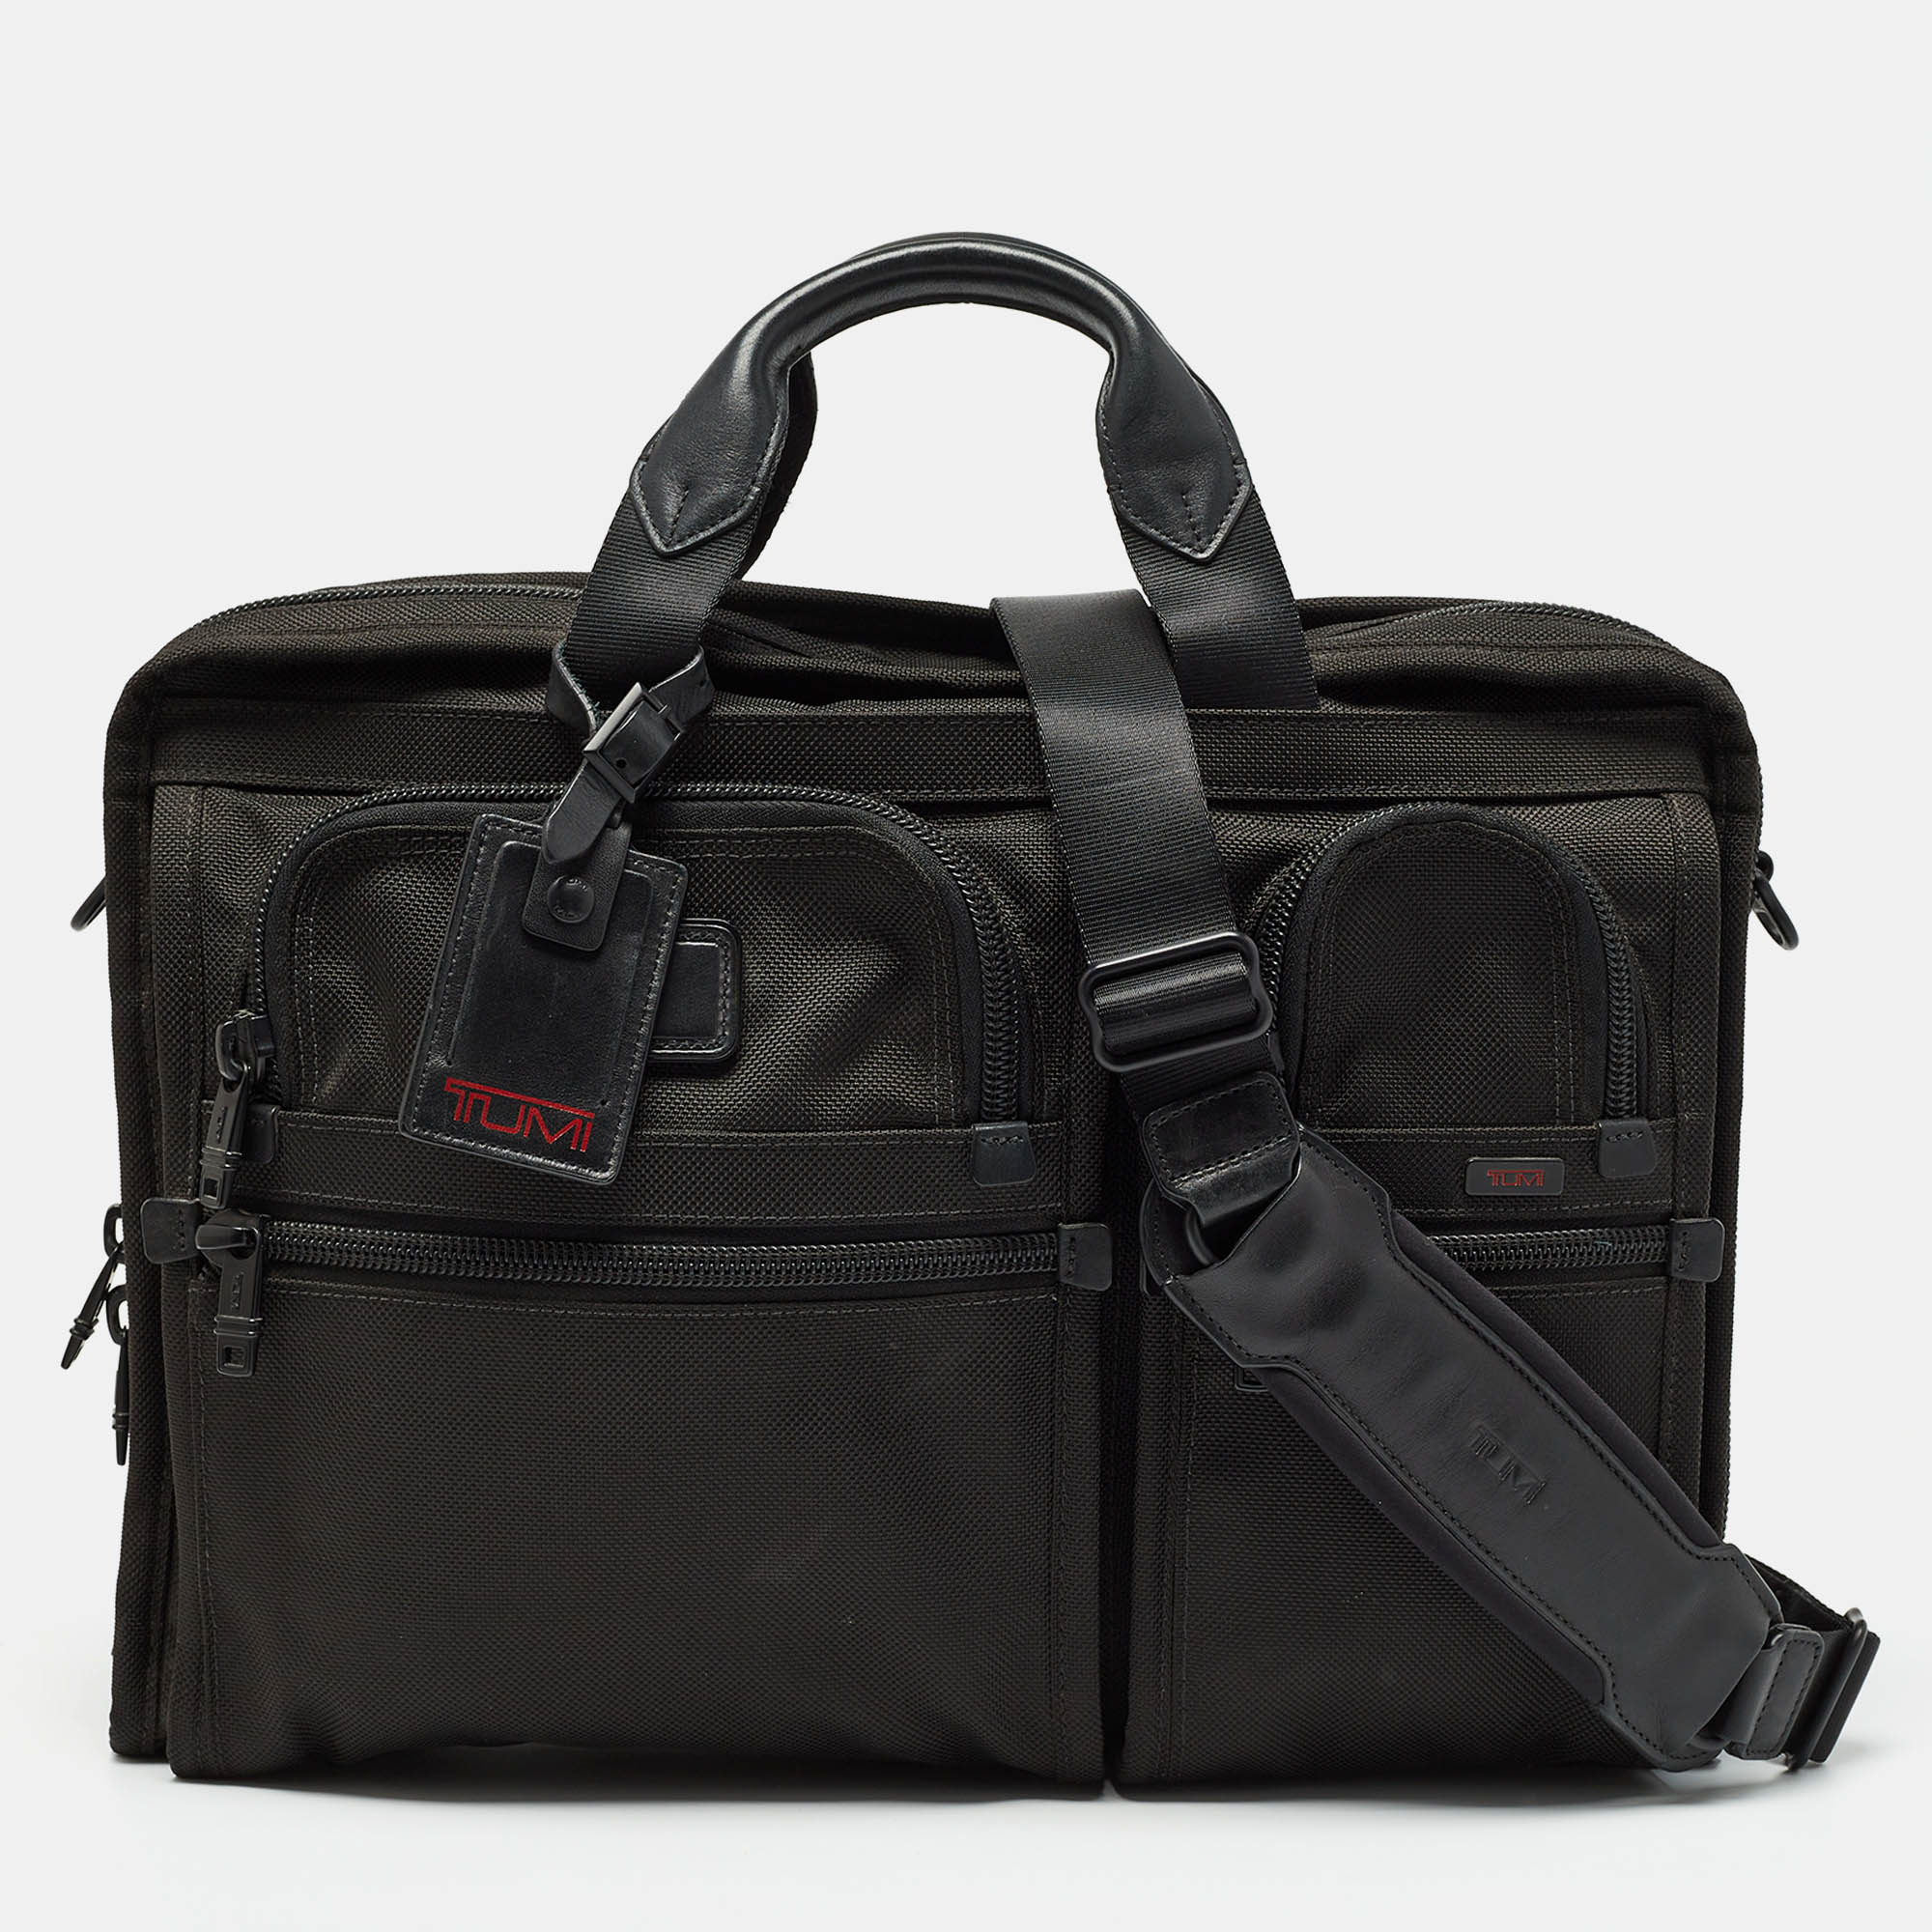 Tumi black nylon large alpha laptop case bag